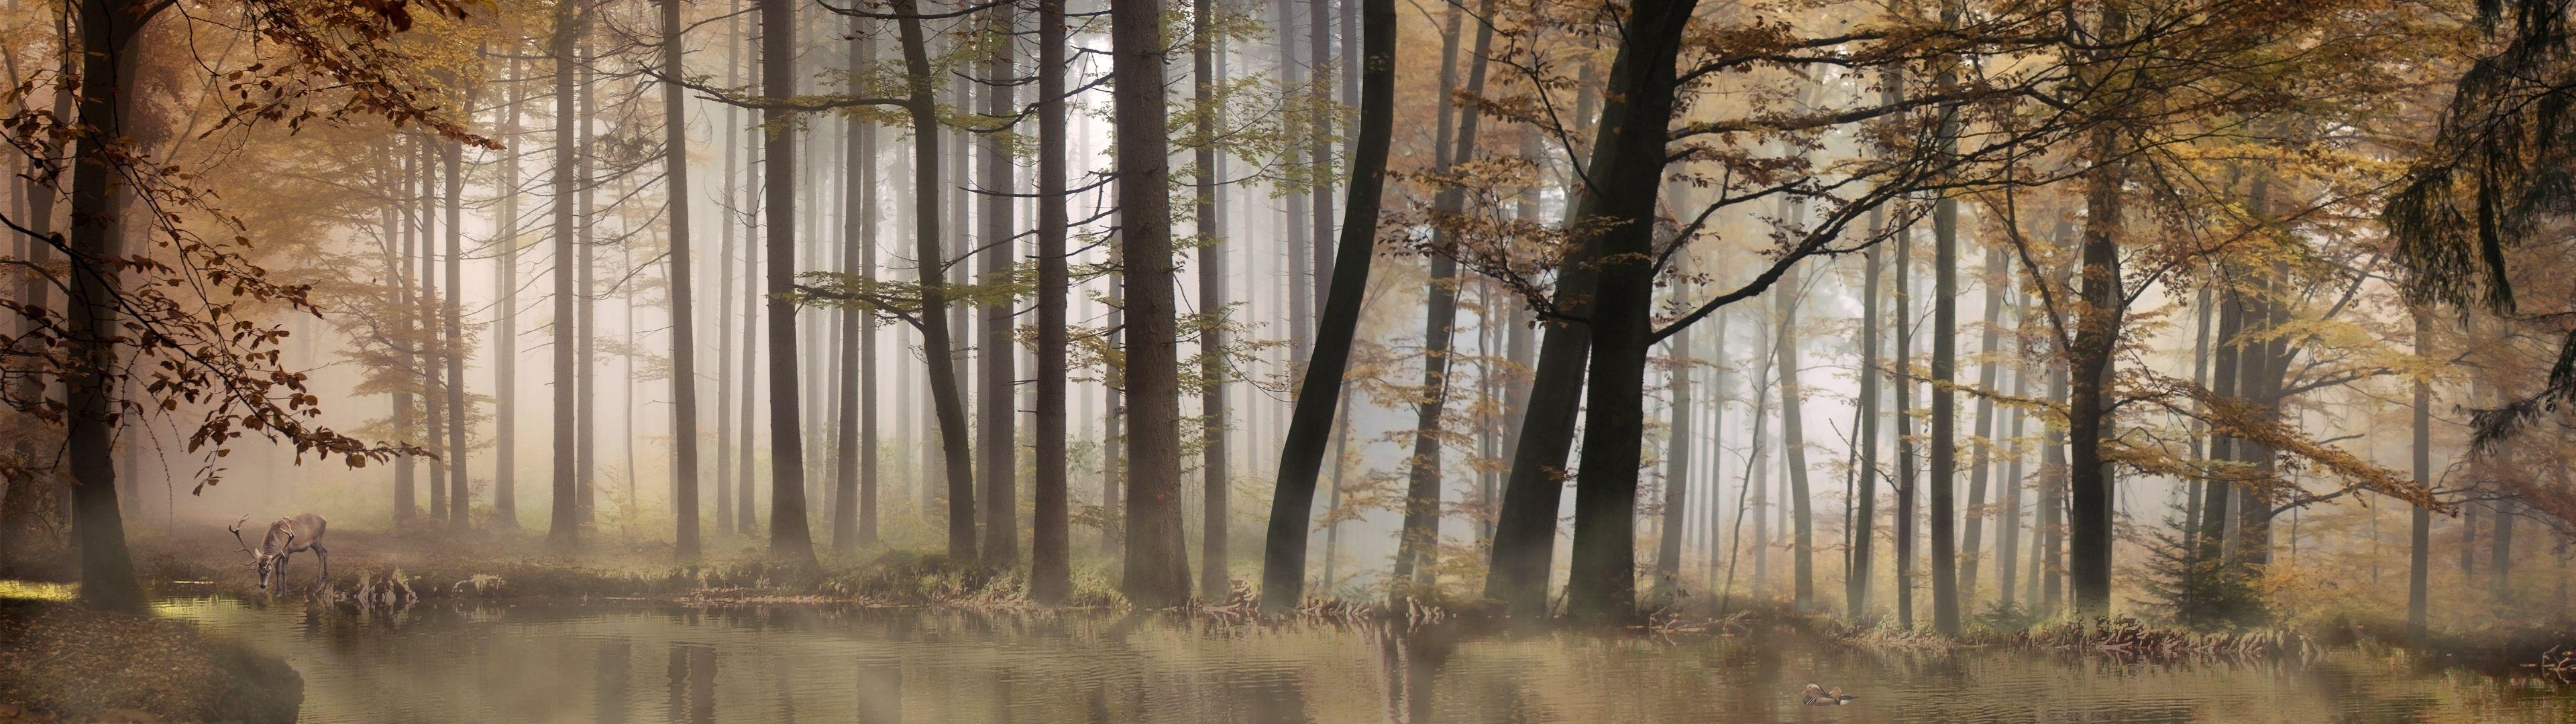 Hình nền rừng: Rừng là nơi quý giá, có sức sống vô tận và đặc biệt. Hình ảnh rừng là một chủ đề đầy thú vị trong các hình nền. Bạn có muốn tìm kiếm những hình ảnh rừng đẹp nhất không? Hãy xem các tấm hình nền rừng mà chúng tôi chia sẻ để cảm nhận vẻ đẹp của thiên nhiên.